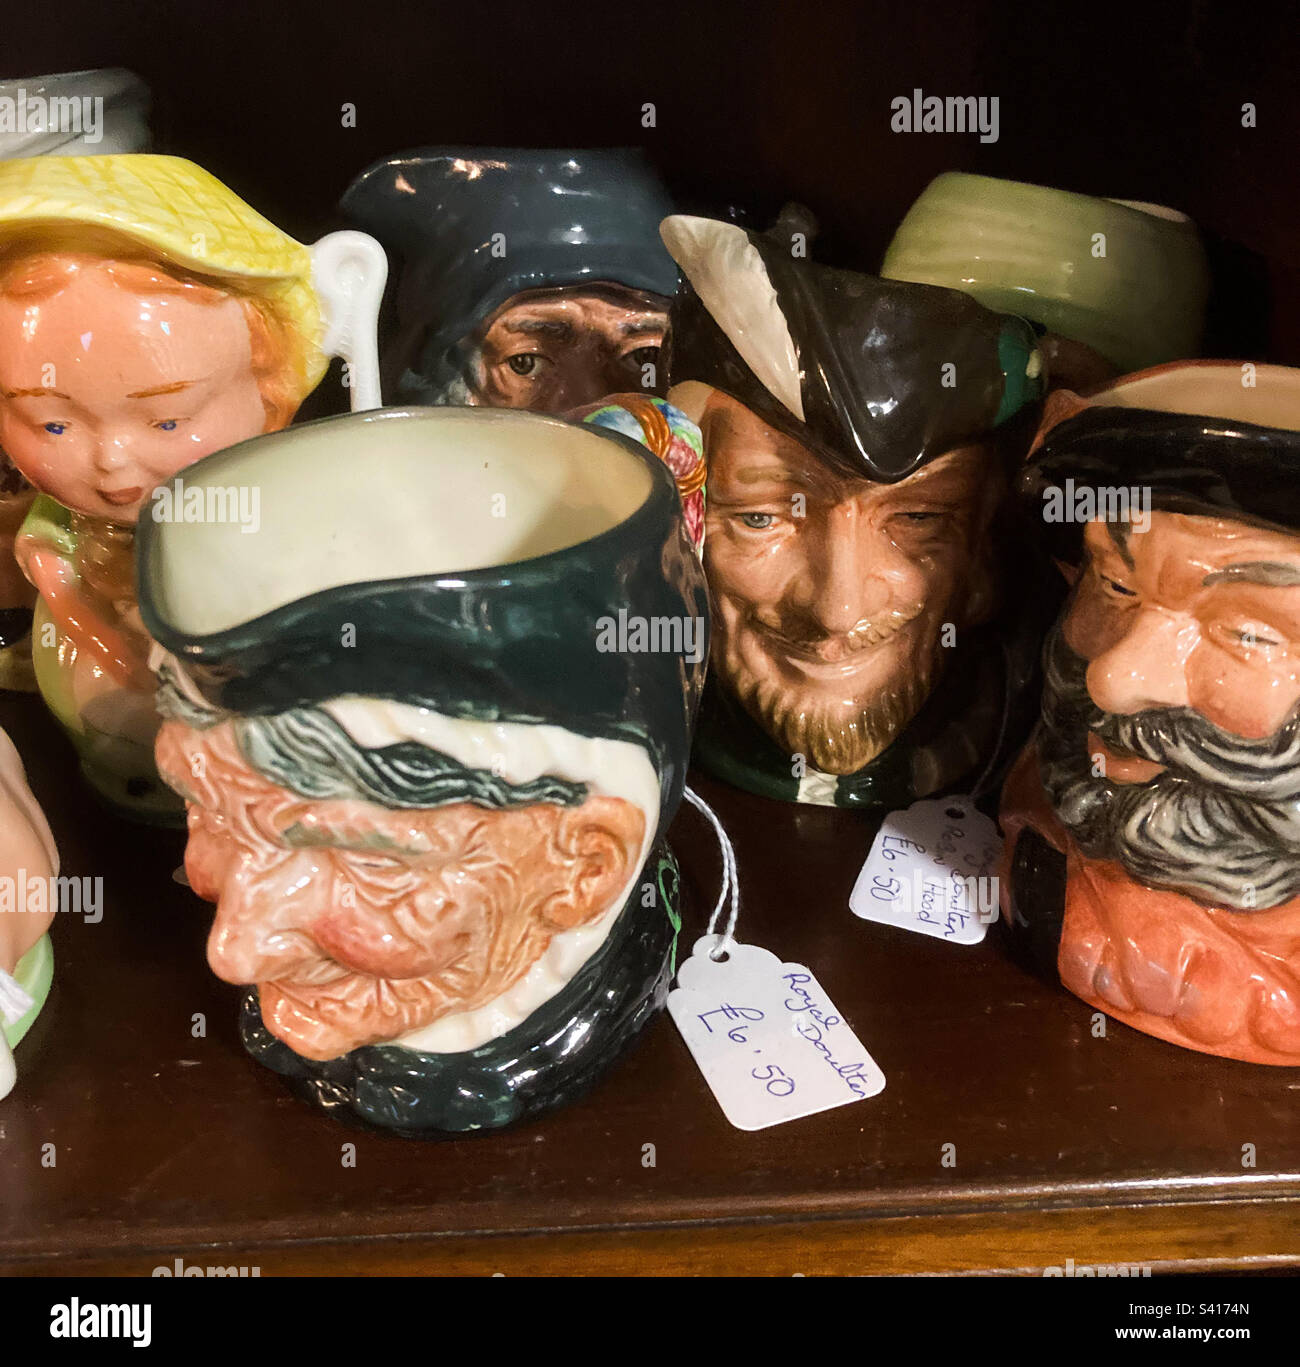 Royal Doulton antique mug collection Stock Photo - Alamy